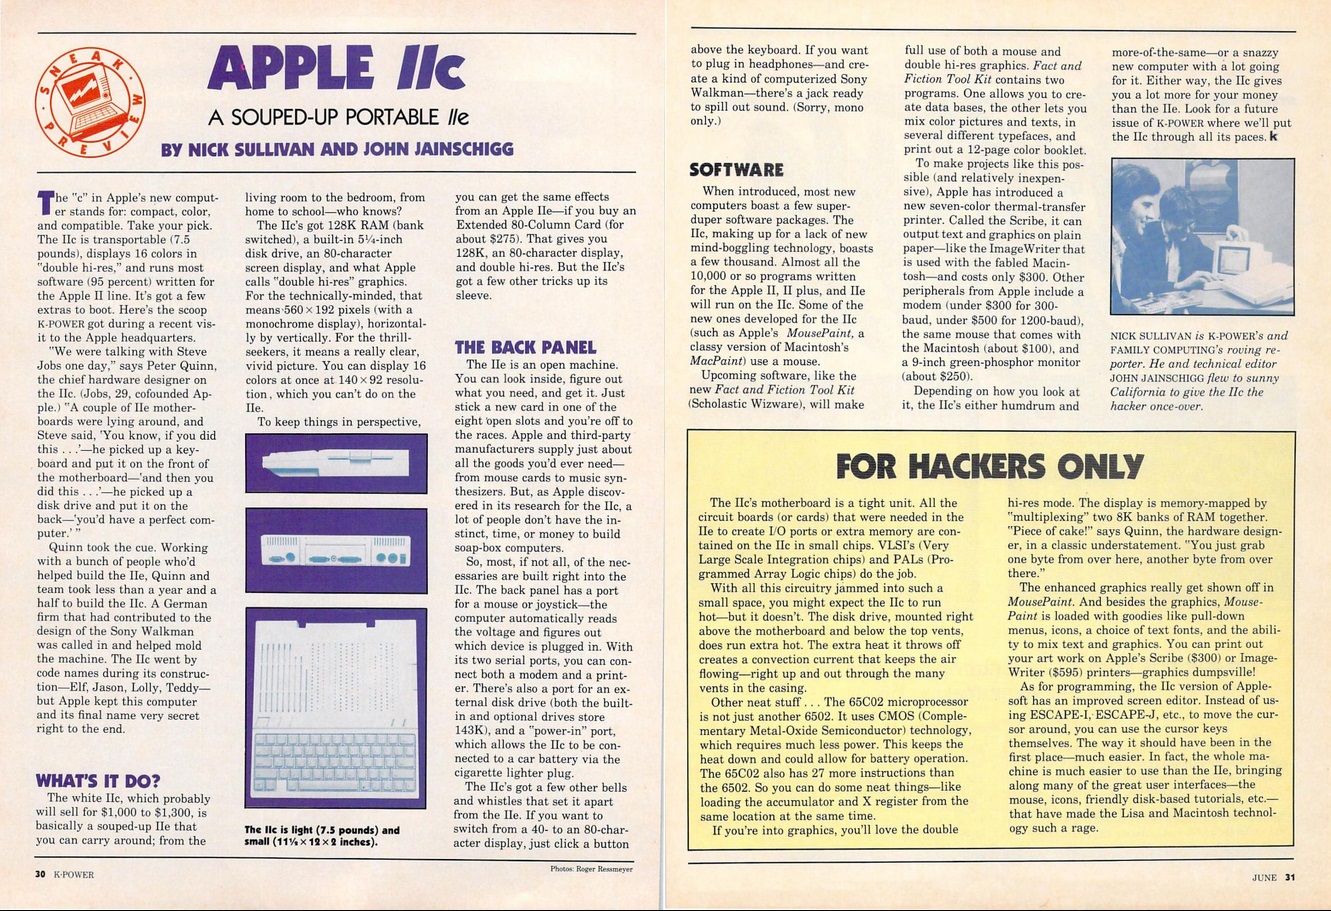 K Power 1984 Apple Walkman.jpg